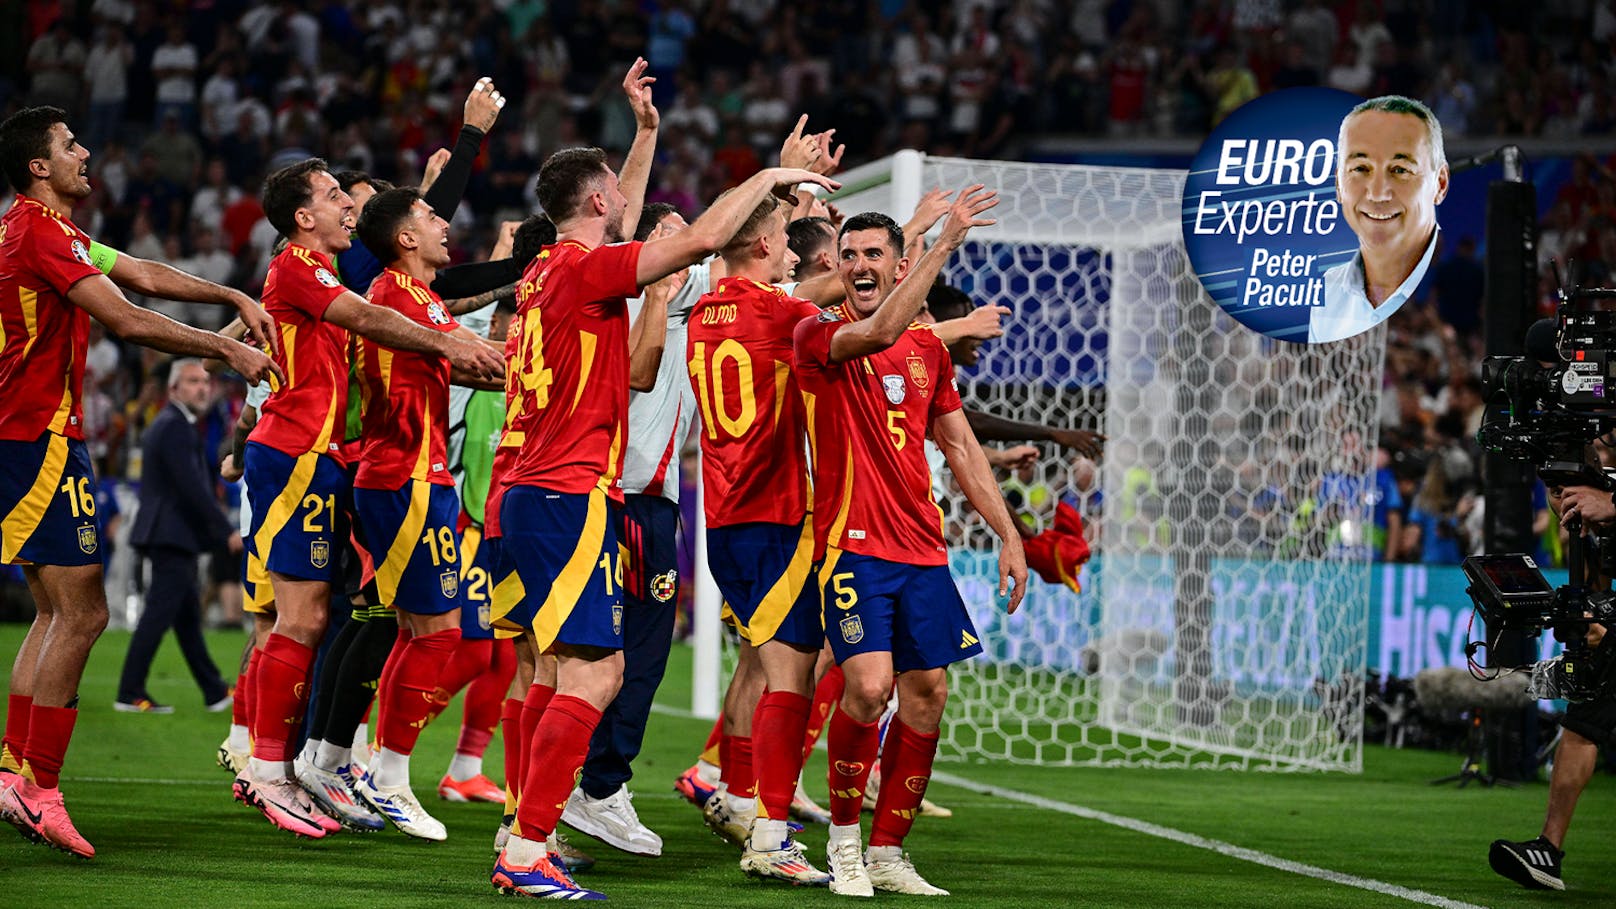 Pacult über Spanien: "Spiel kann man nicht kopieren"